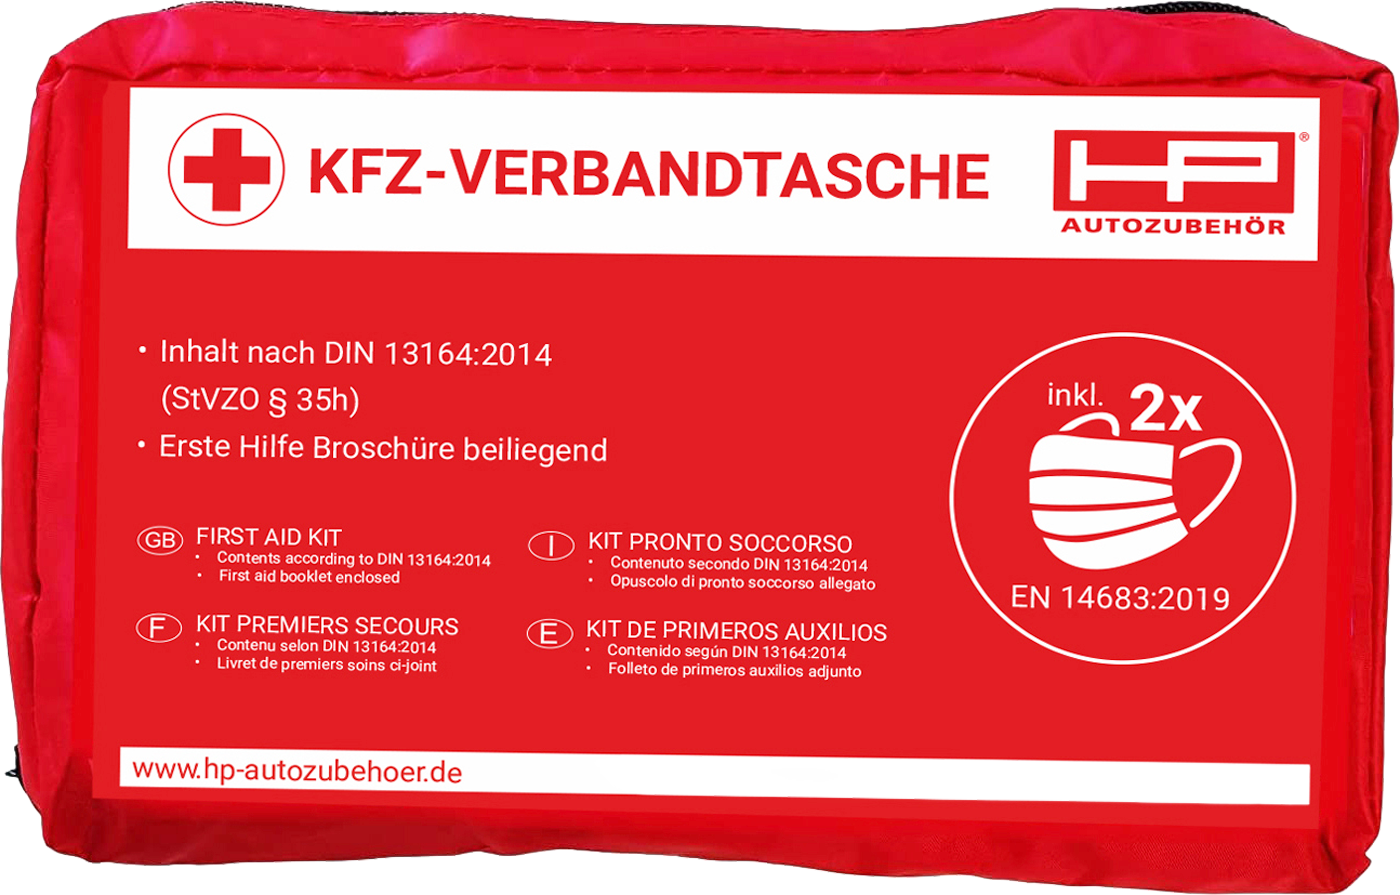 KFZ-Verbandtasche inkl, 23 in 1